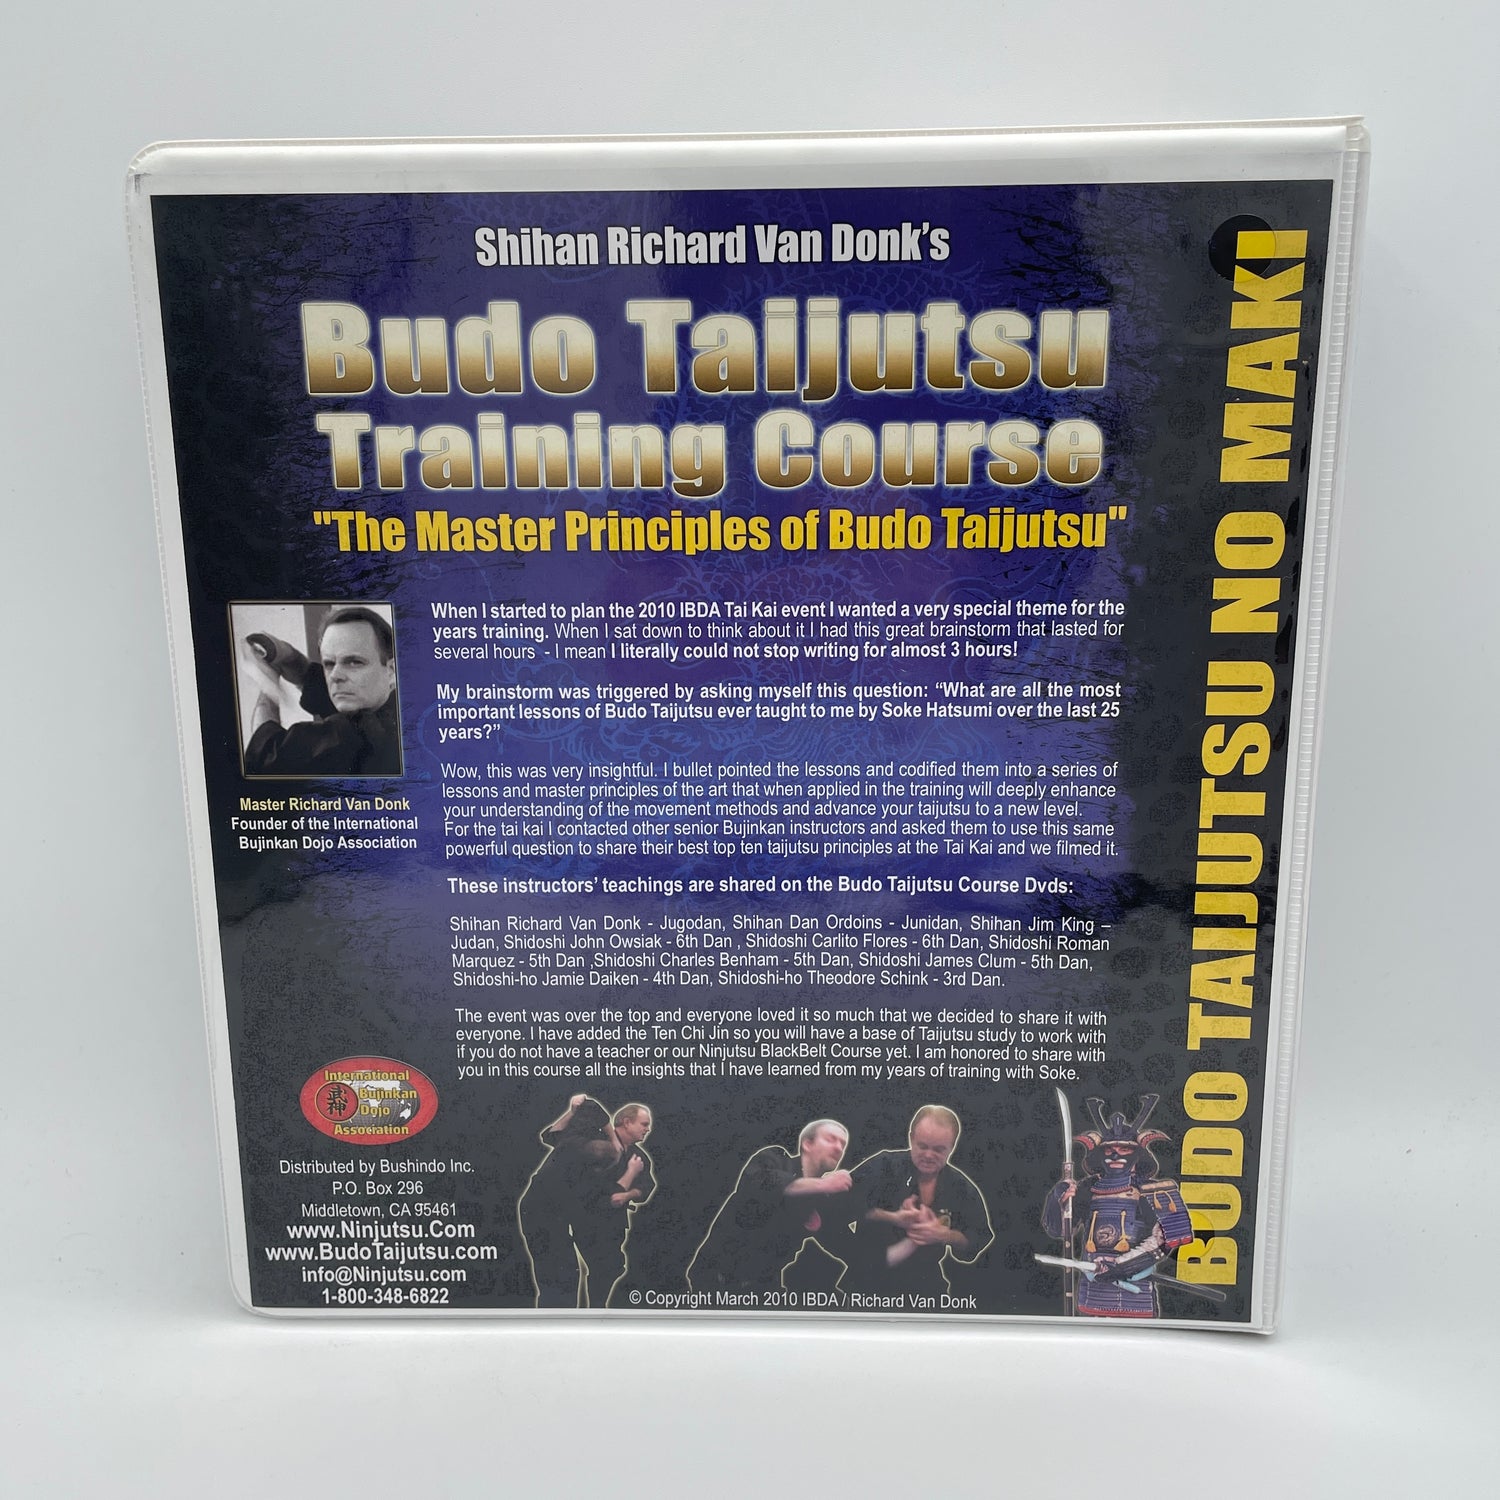 Budo Taijutsu Training Course by Richard Van Donk